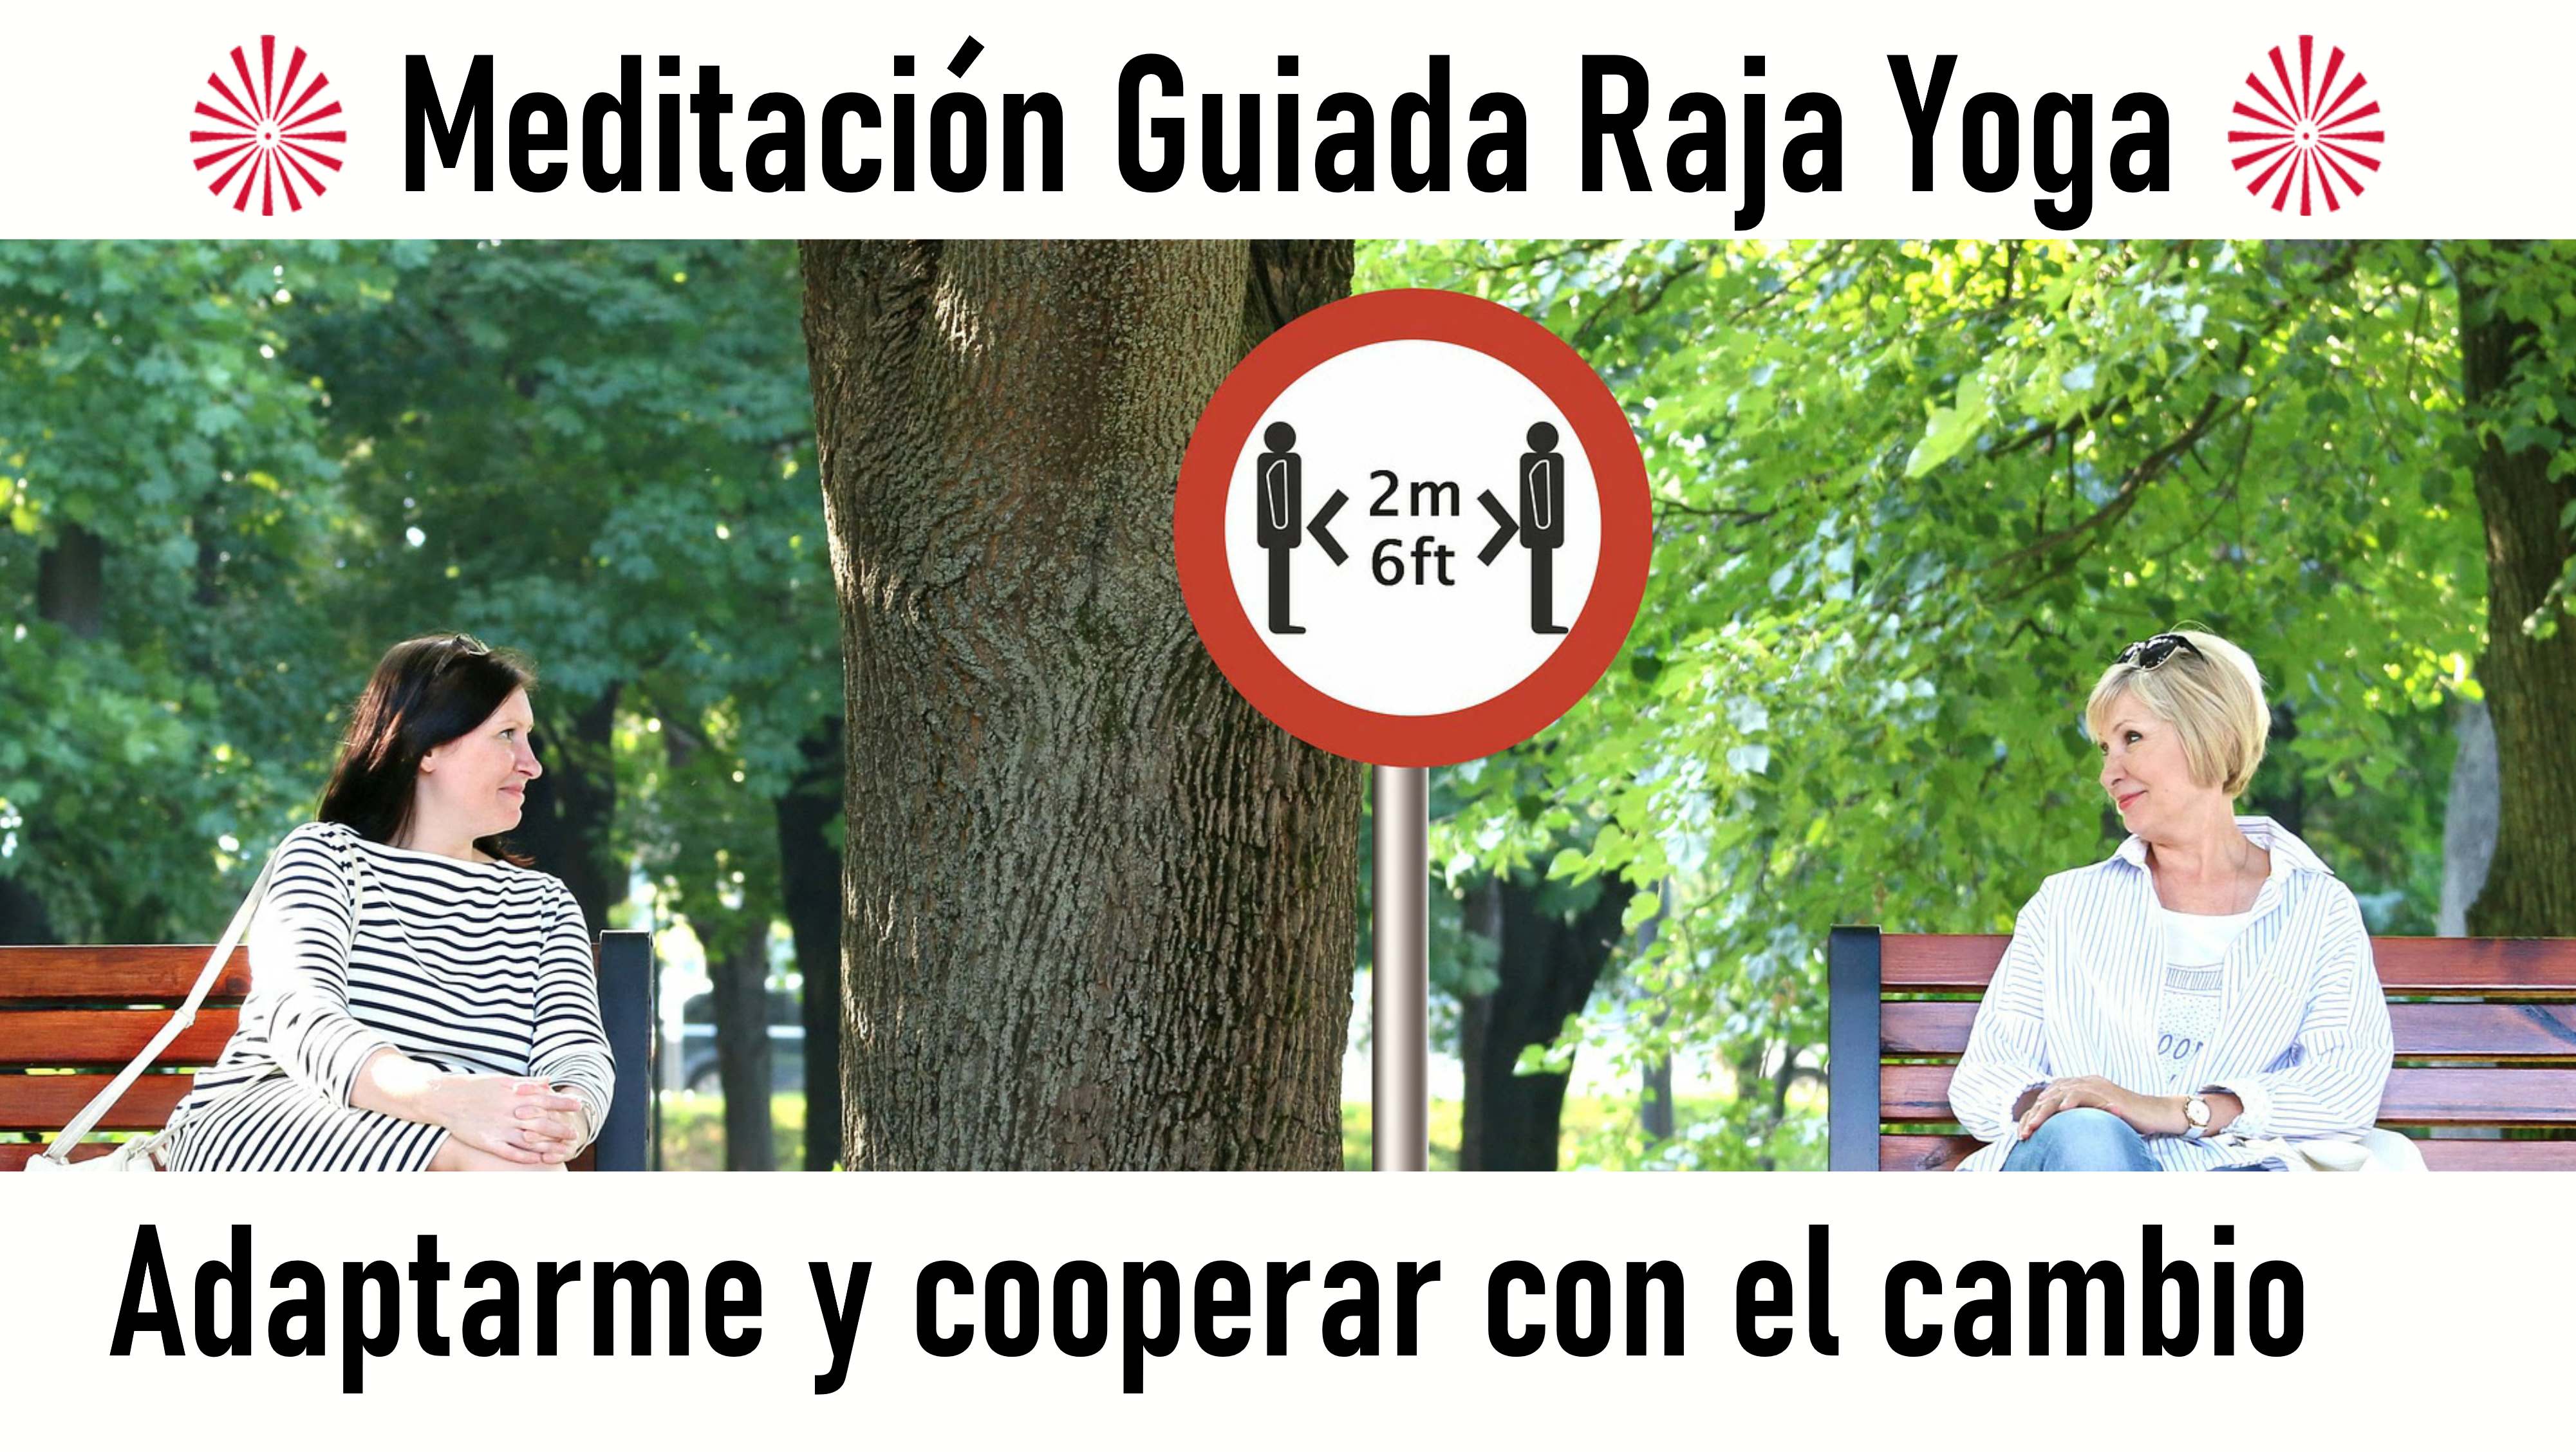 Meditación Raja Yoga: Adaptarme y cooperar con el cambio (21 Agosto 2020) On-line desde Barcelona